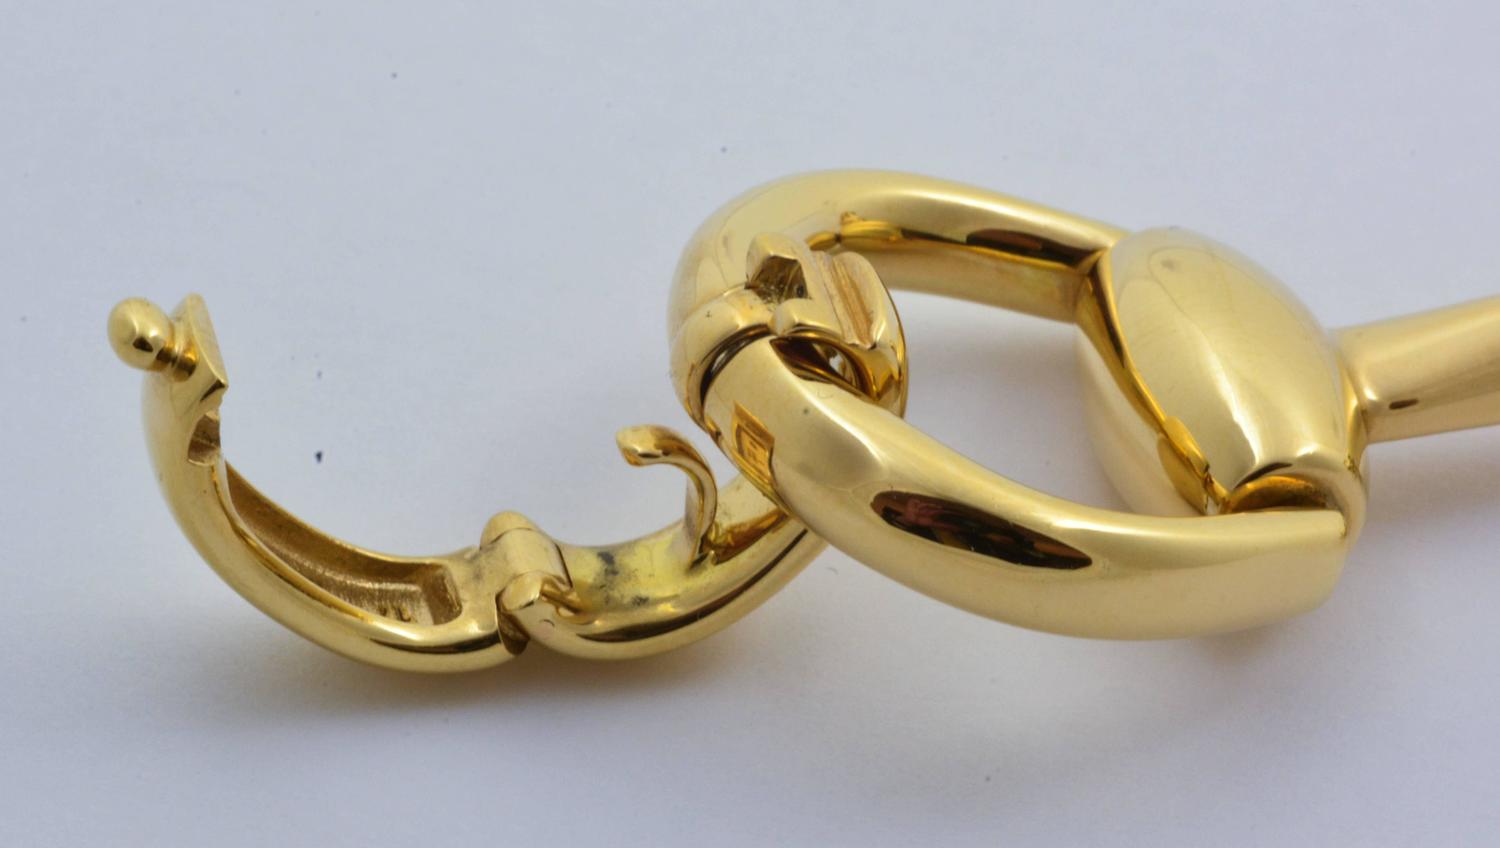 Gucci Gold Horsebit Bracelet For Sale at 1stdibs